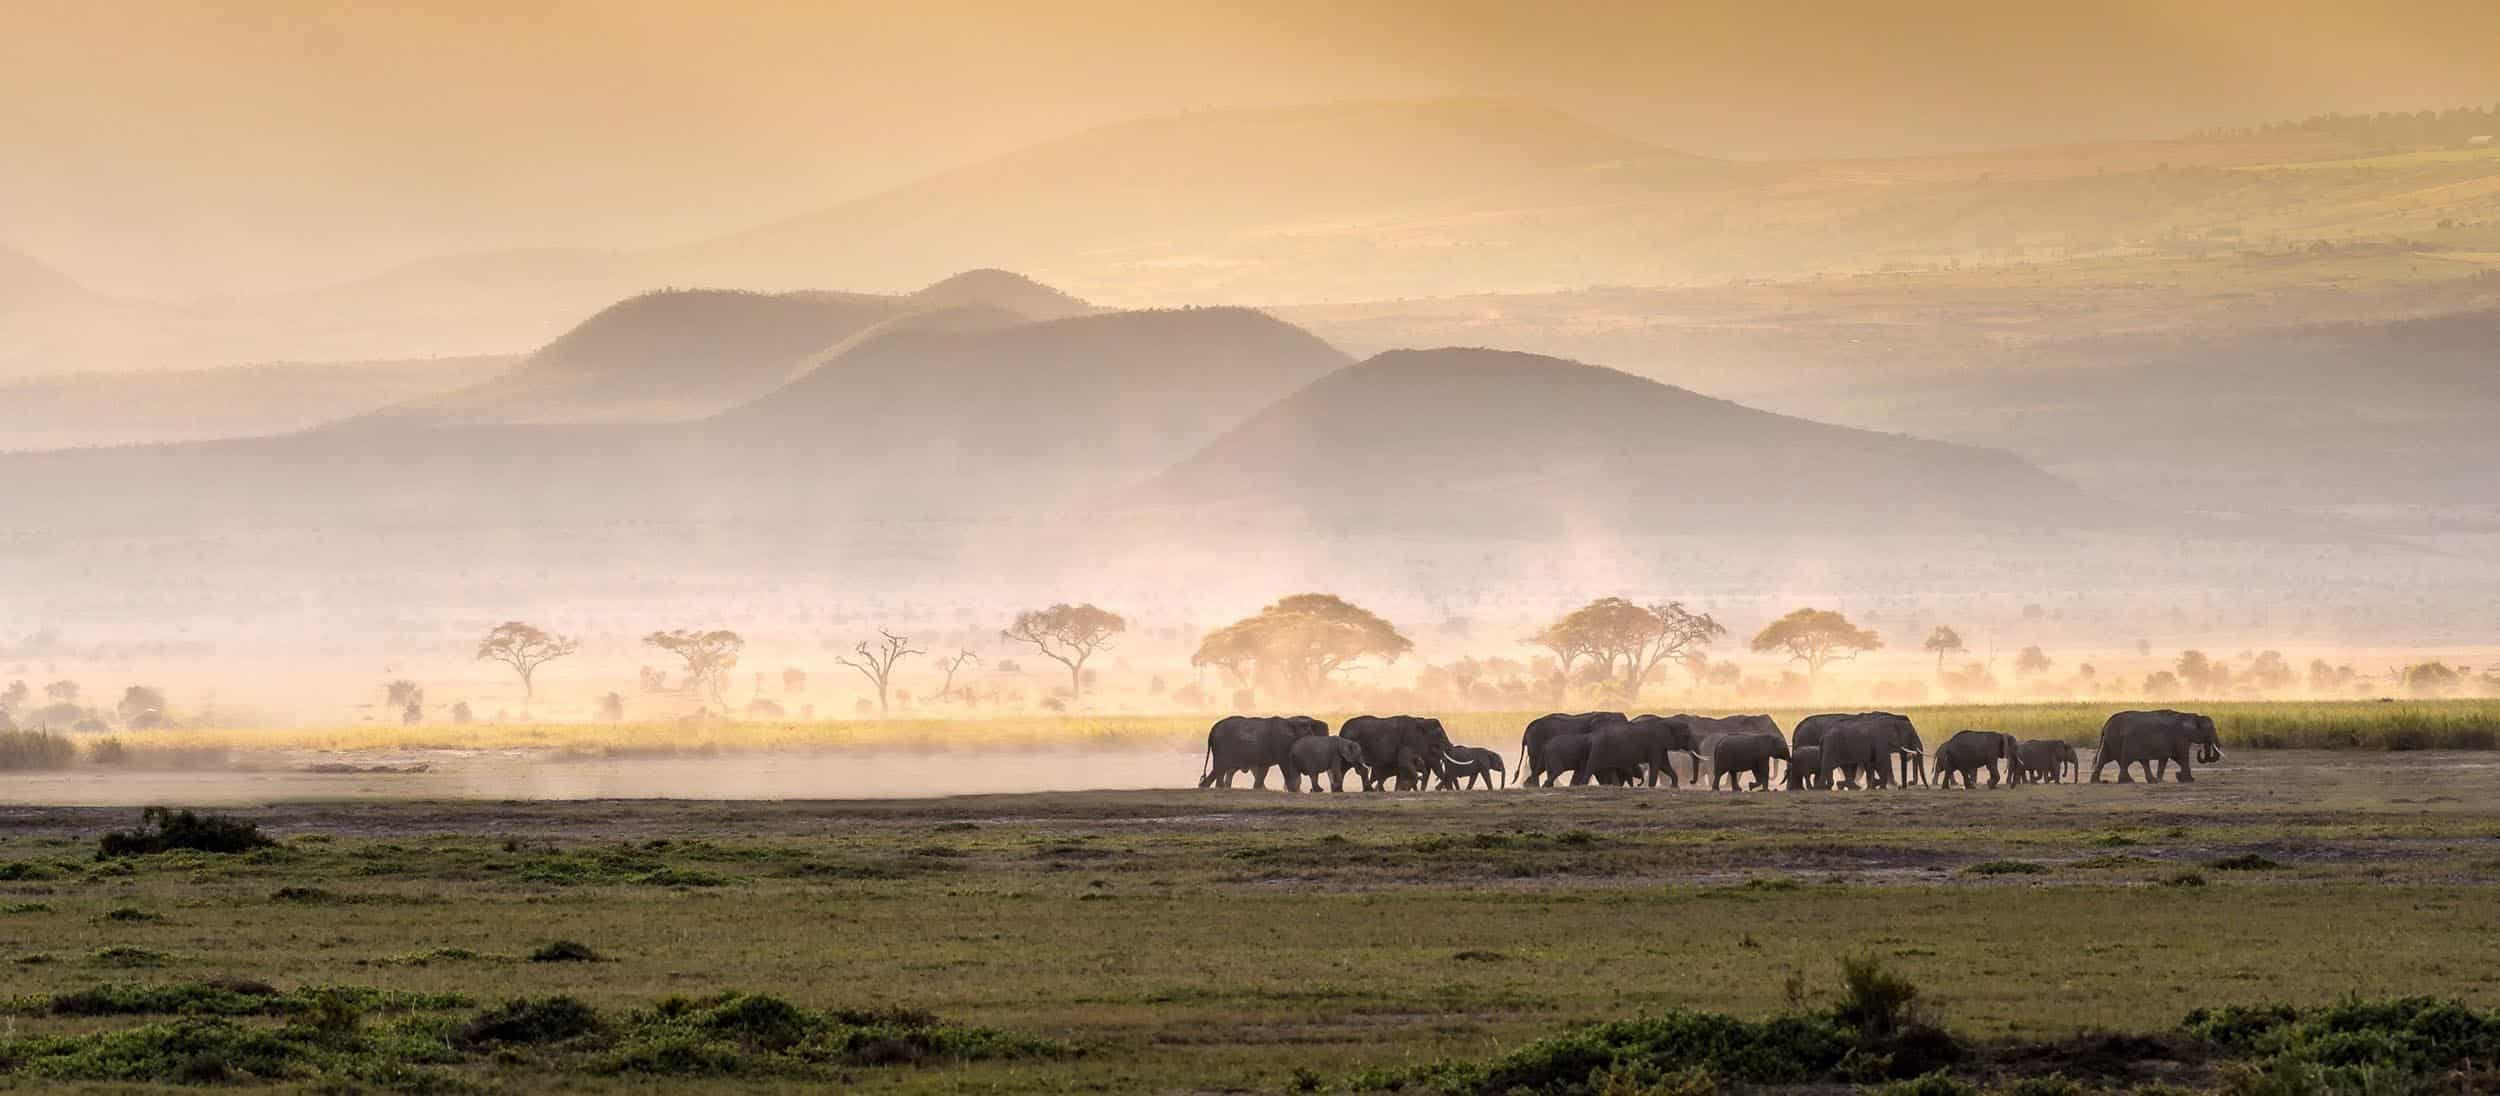 Tanzania safari tours with easy travel